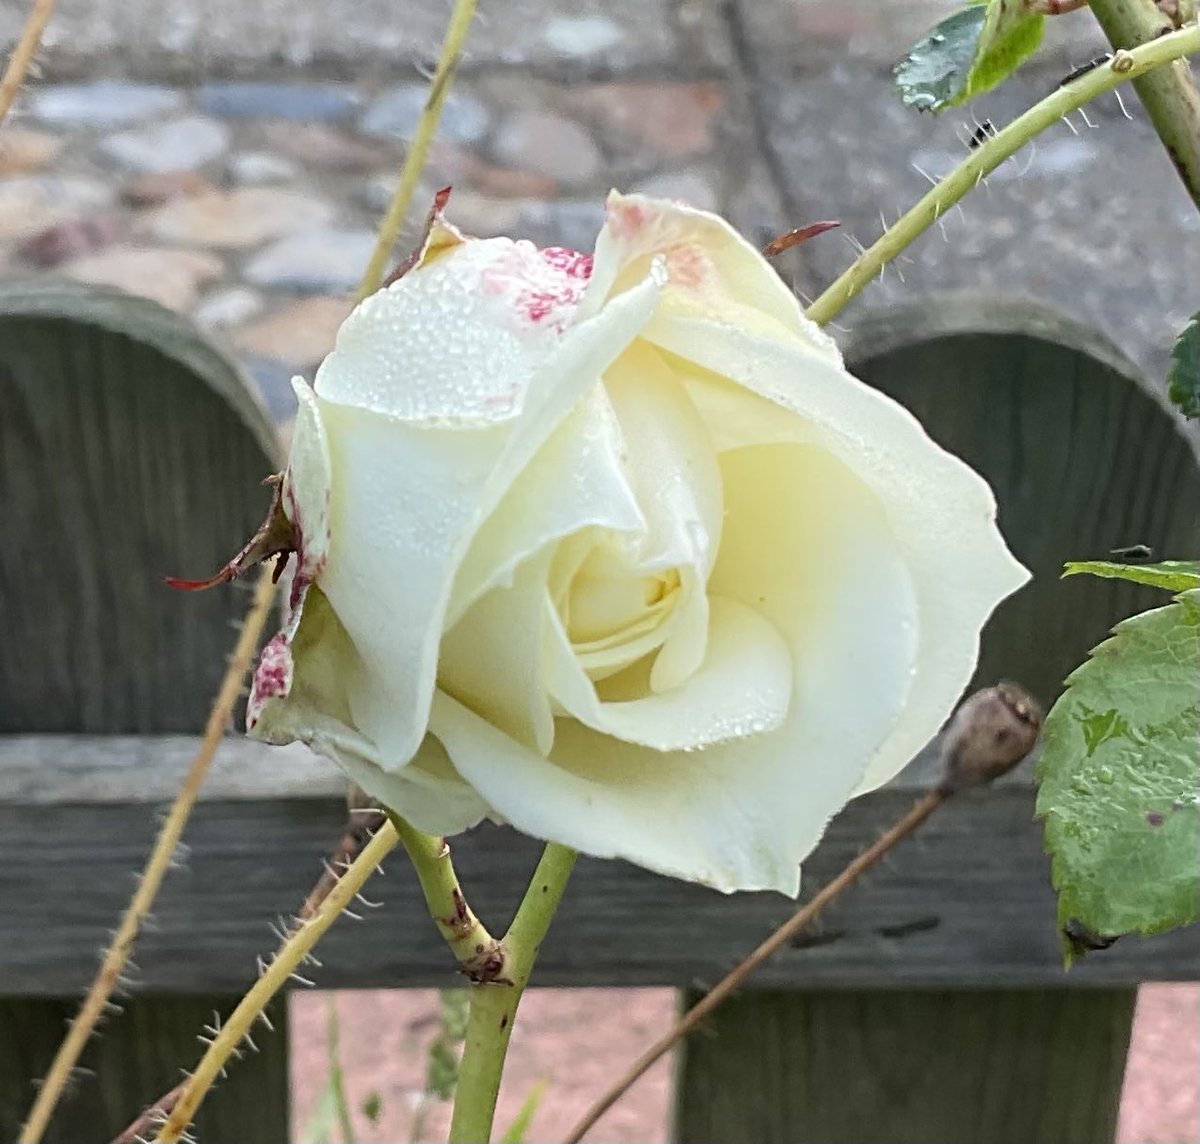 #Roseaday still enjoying the #Roses